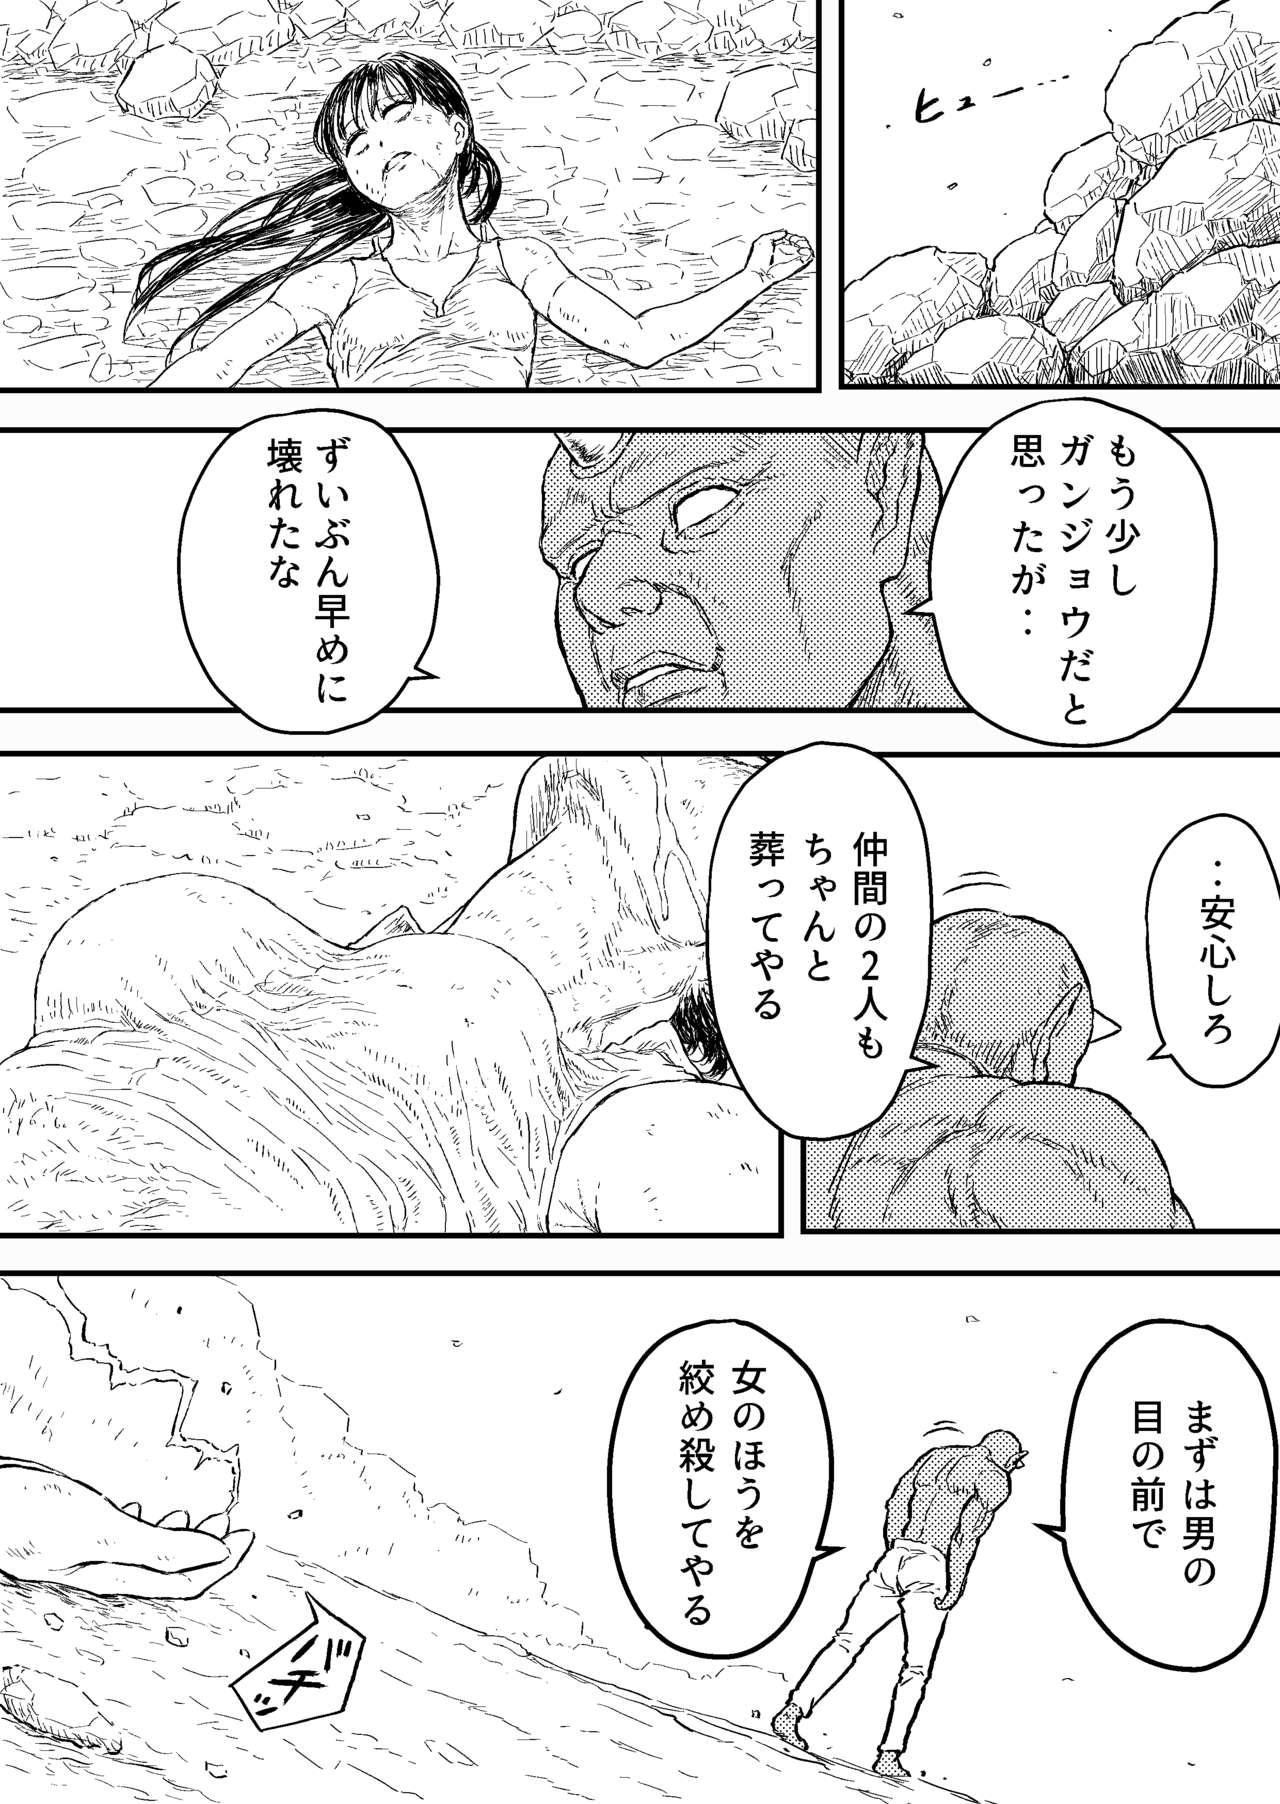 Ass Licking Sutoranguru Gold 4 『Seigi no hiroin kosatsu subete o kake te tataka ta shojo no unmei』 - Original Mojada - Page 2